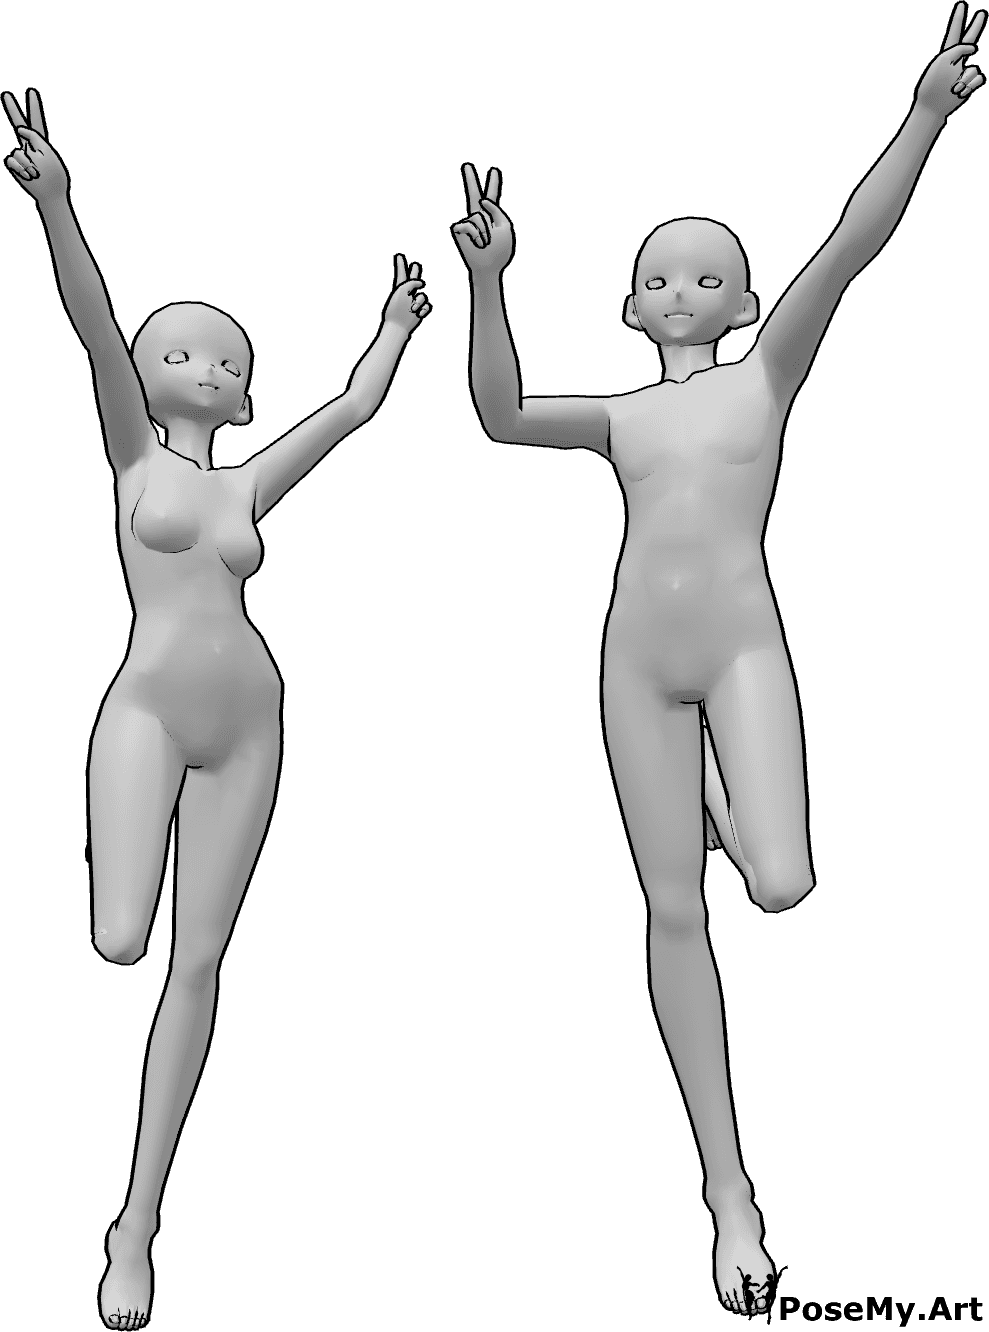 Posen-Referenz- Anime springende Friedenspose - Anime weiblich und männlich springen und zeigen Friedenszeichen mit beiden Händen